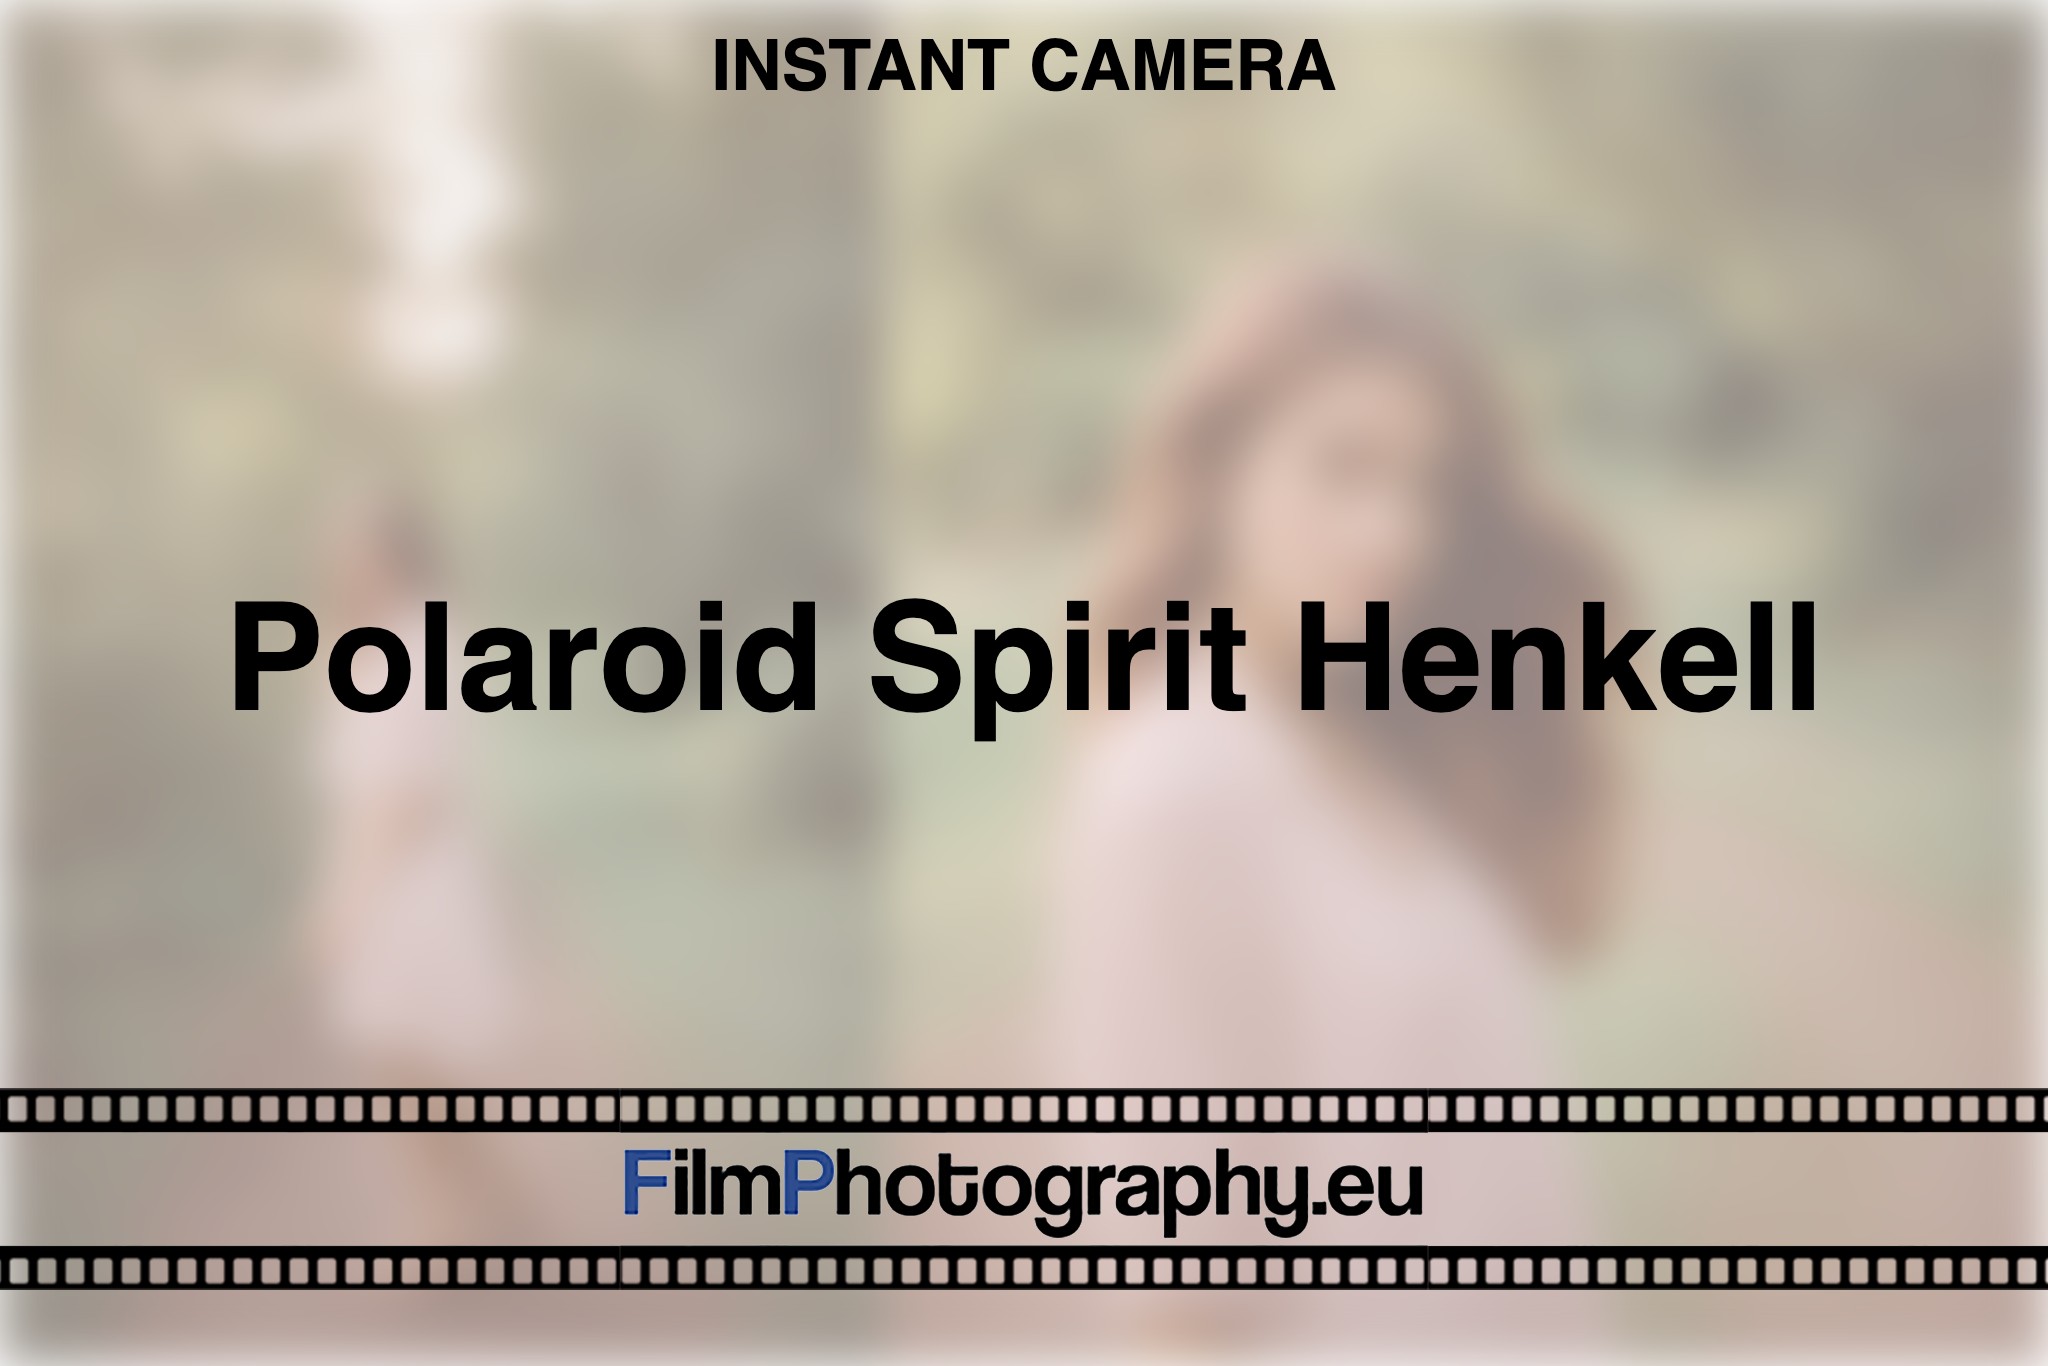 polaroid-spirit-henkell-instant-camera-bnv